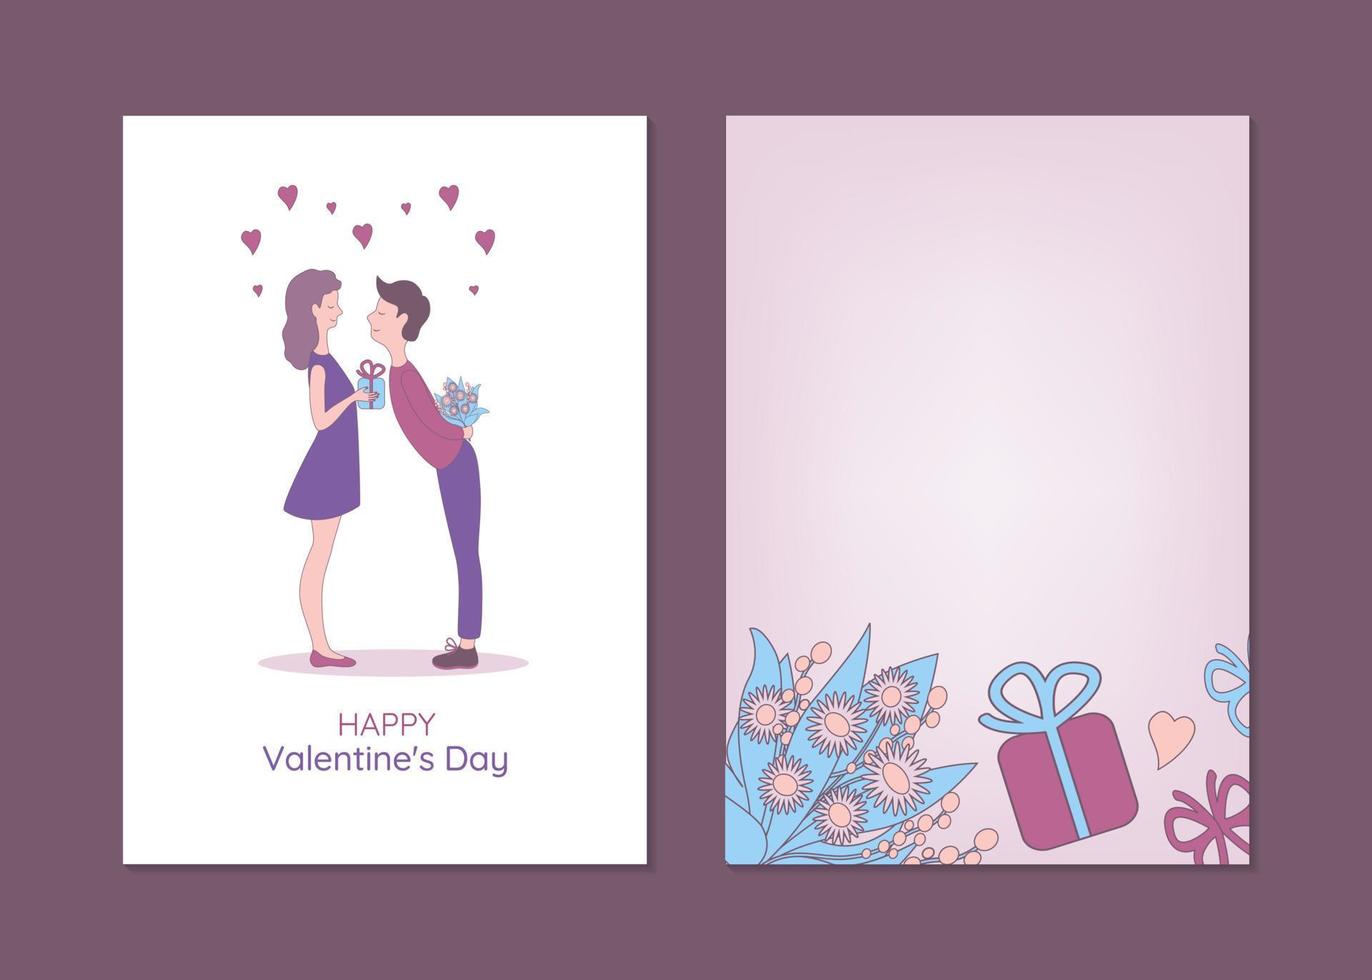 San Valentino giorno saluto carta modelli con uomo e donna. mano disegnato vettore illustrazione di coppia scambiare i regali.